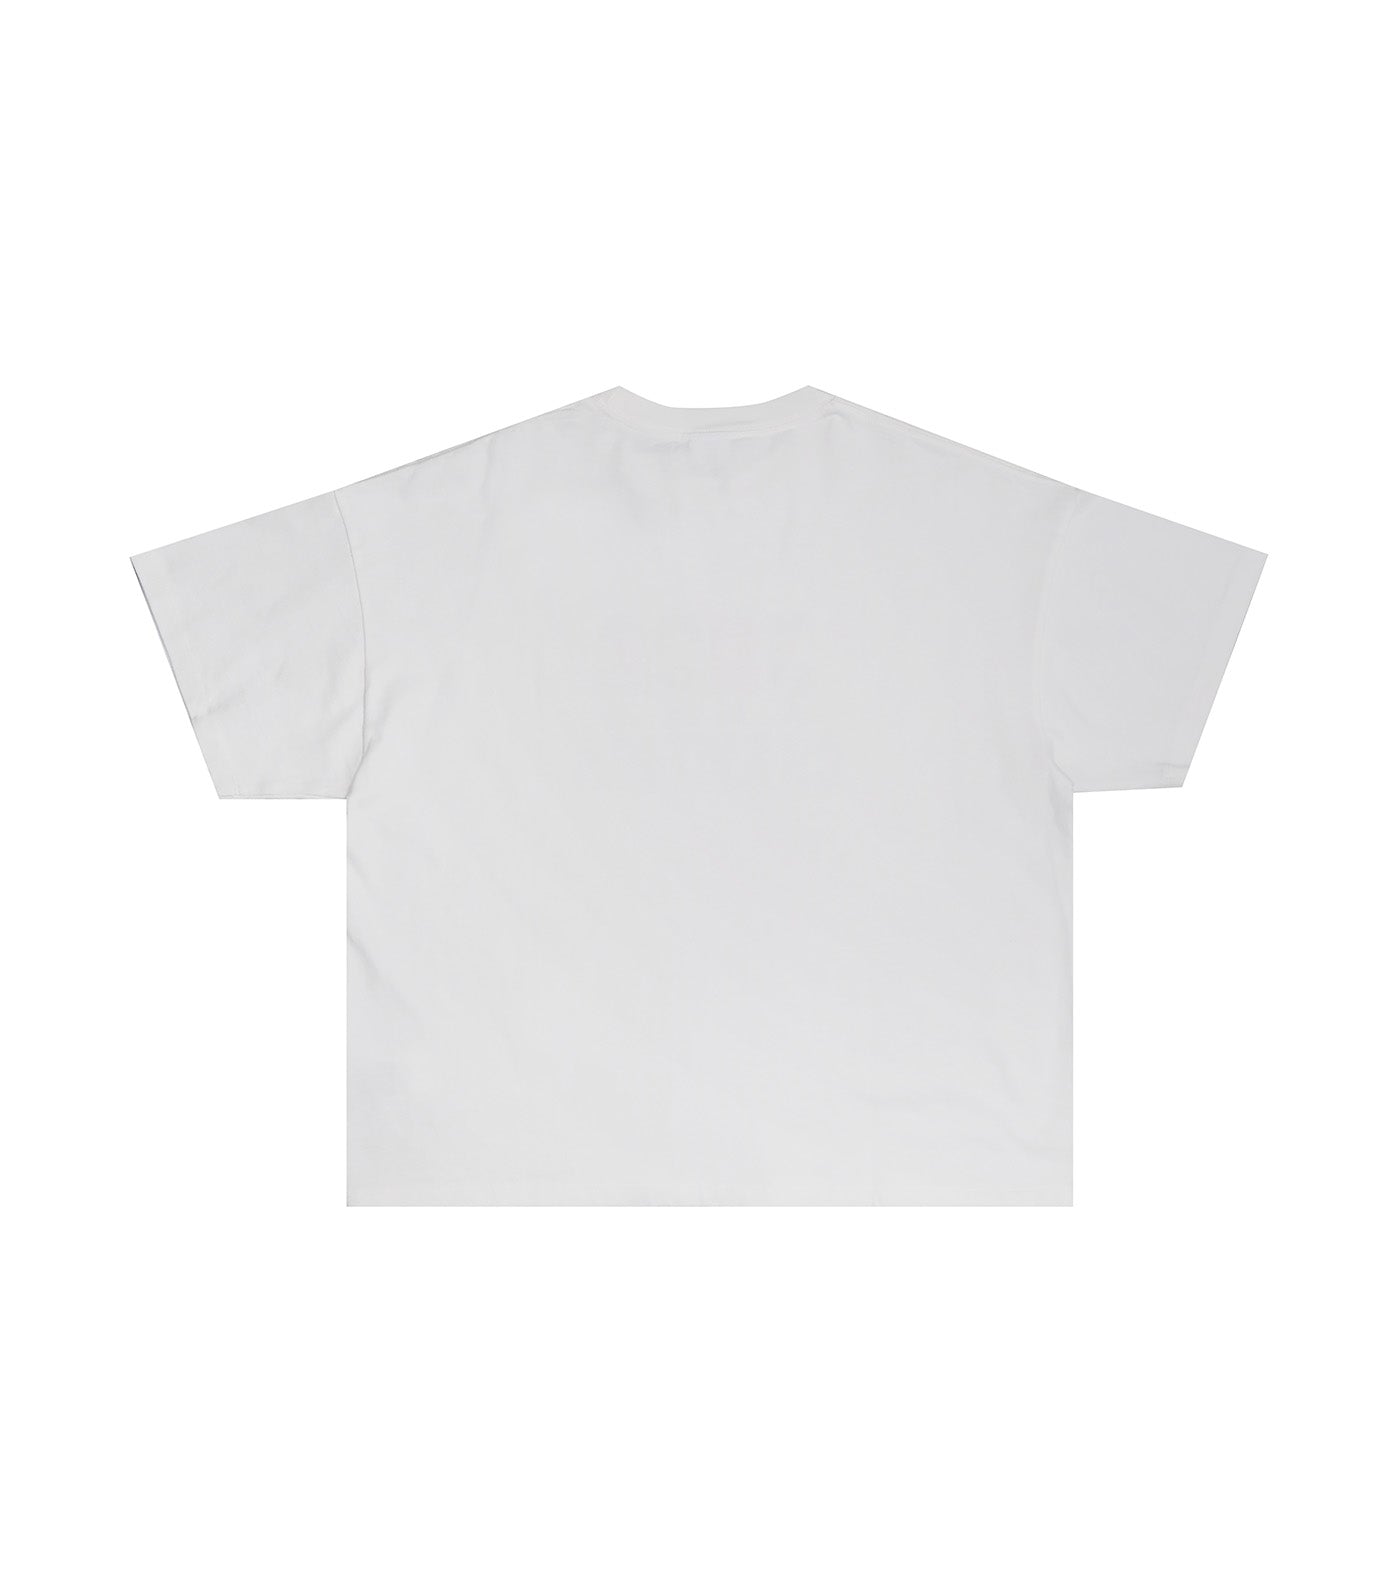 Japan Line Short Sleeve T-Shirt White